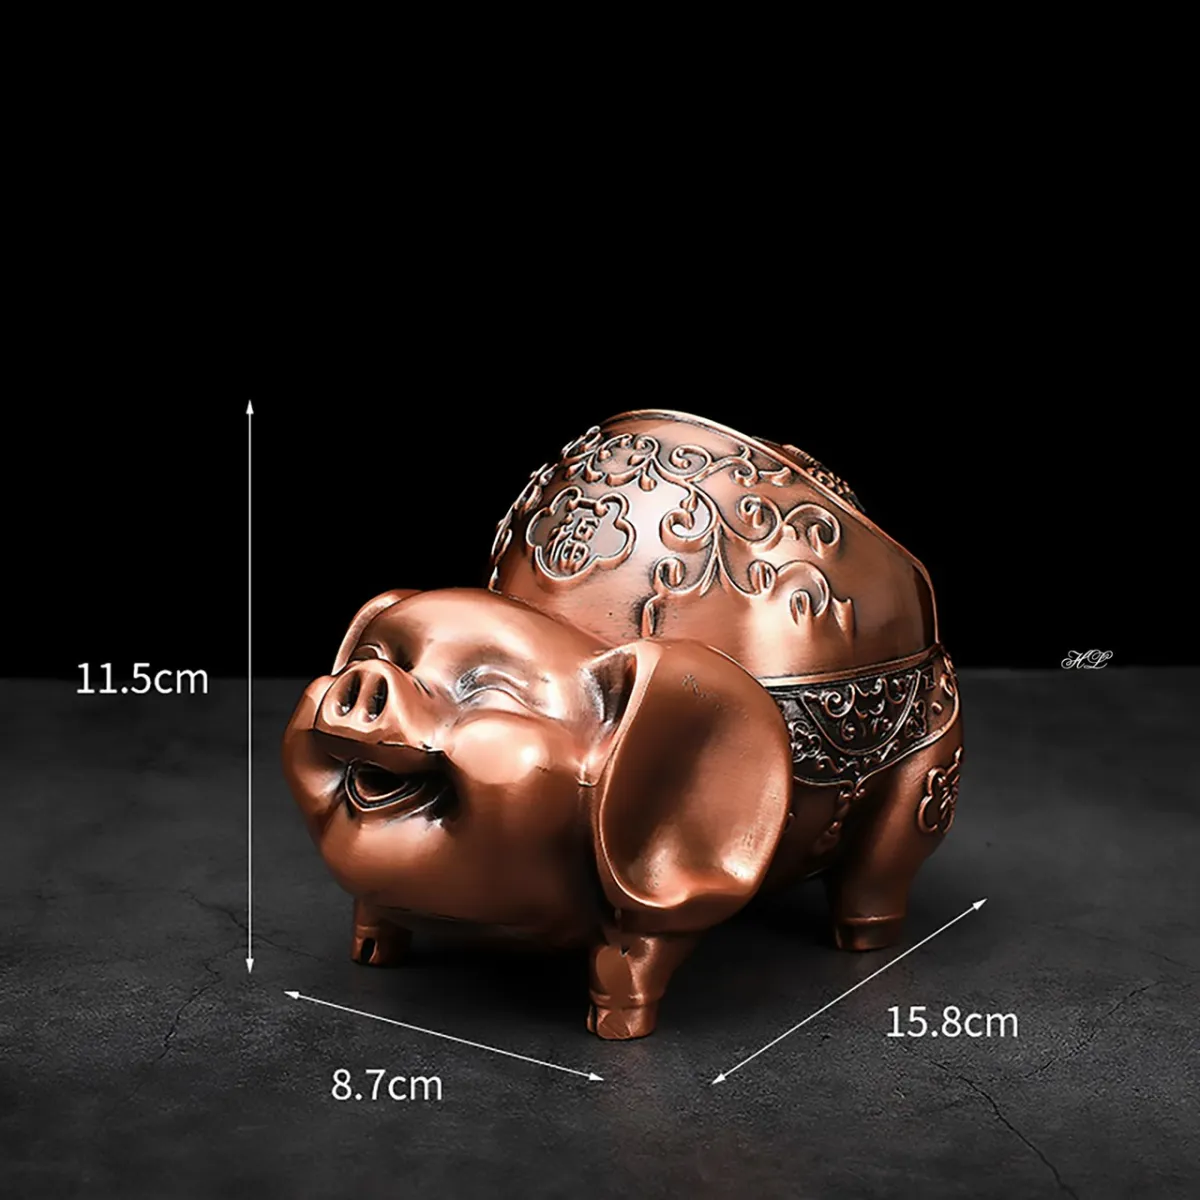 Gạt tàn hình Lợn Đại Cát - Gạt tàn Lợn Đồng hoa văn cổ | Lazada.vn